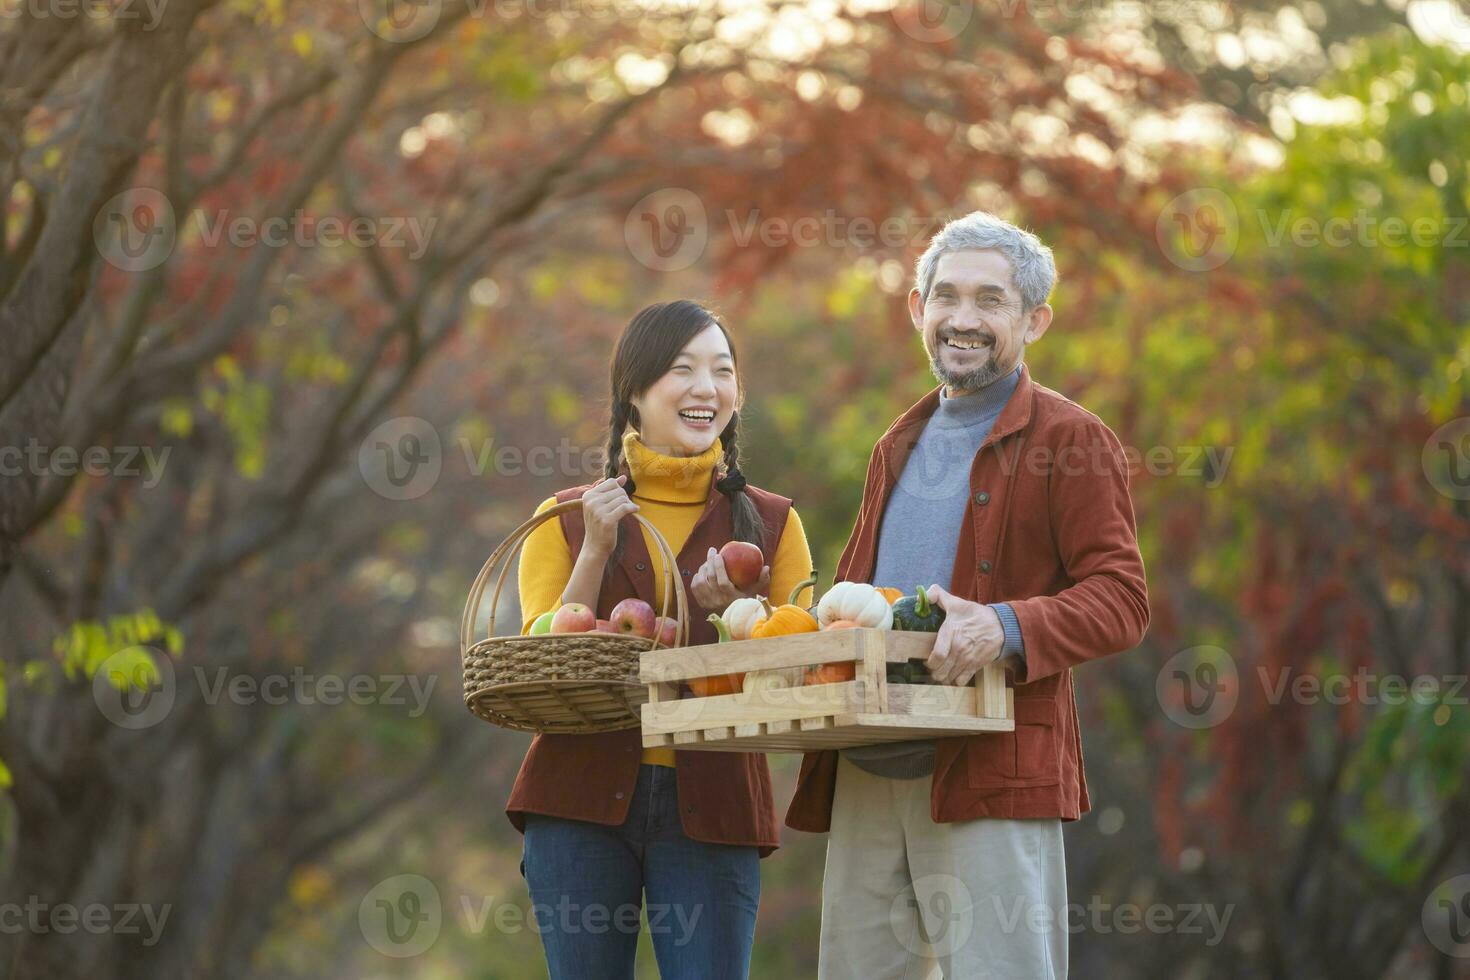 contento granjero familia que lleva Produce cosecha con de cosecha propia orgánicos manzana, squash y calabaza con otoño color desde arce árbol durante otoño temporada foto